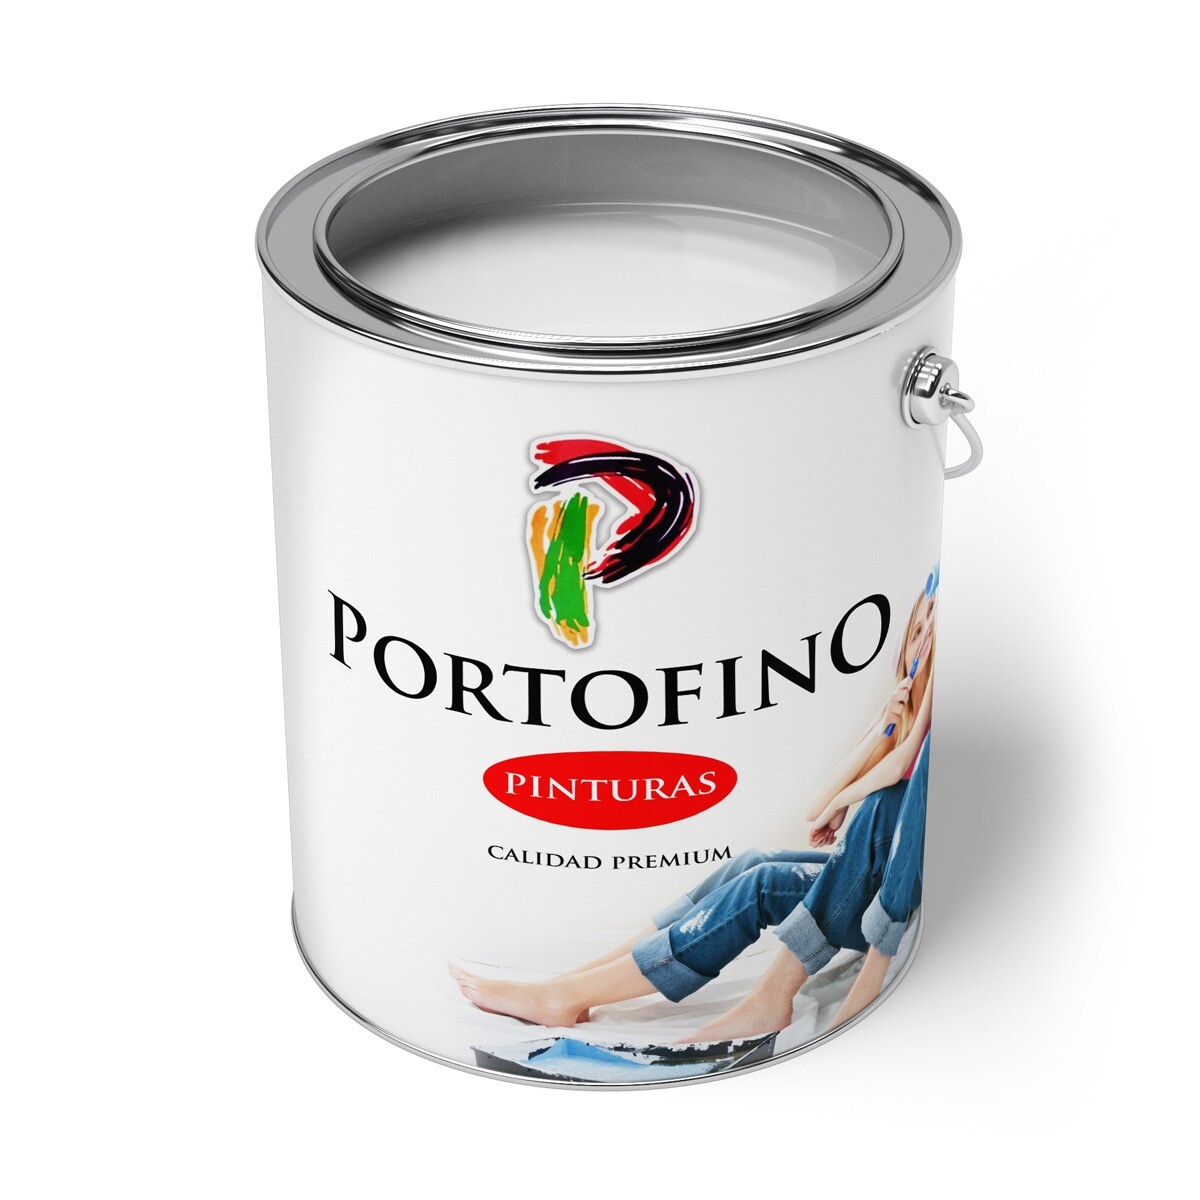 Convertilux Portofino 1 Lt. Vde.manzana 